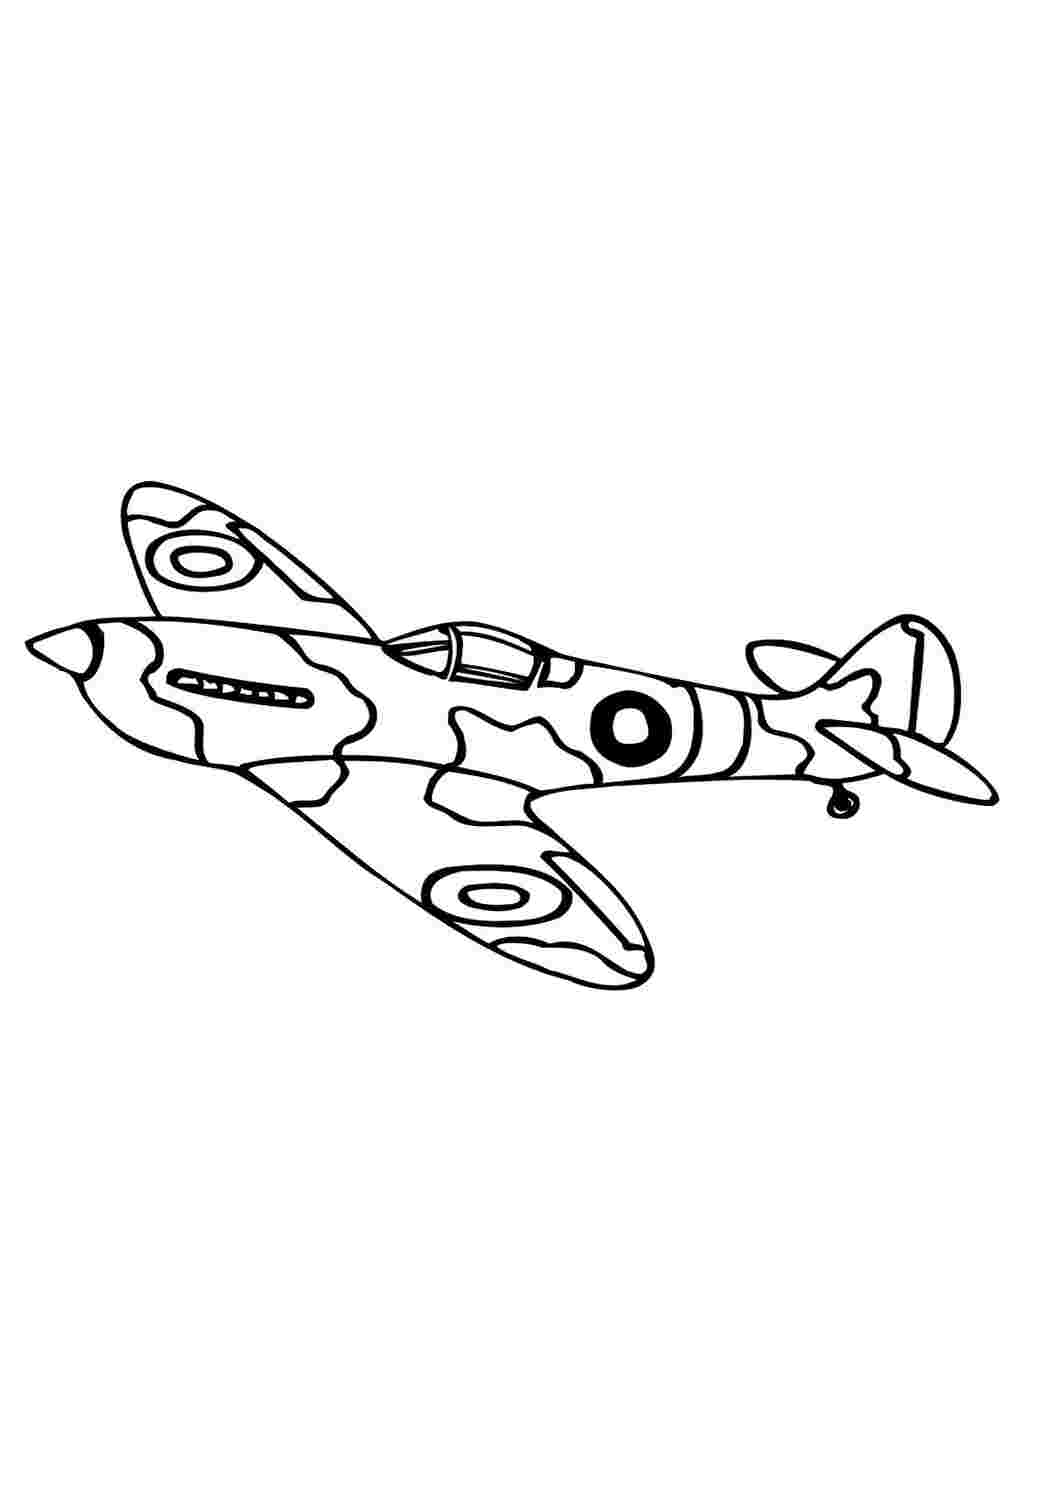 Раскраски картинки на рабочий стол онлайн Самолет в защитного окраса Раскраски для мальчиков бесплатно